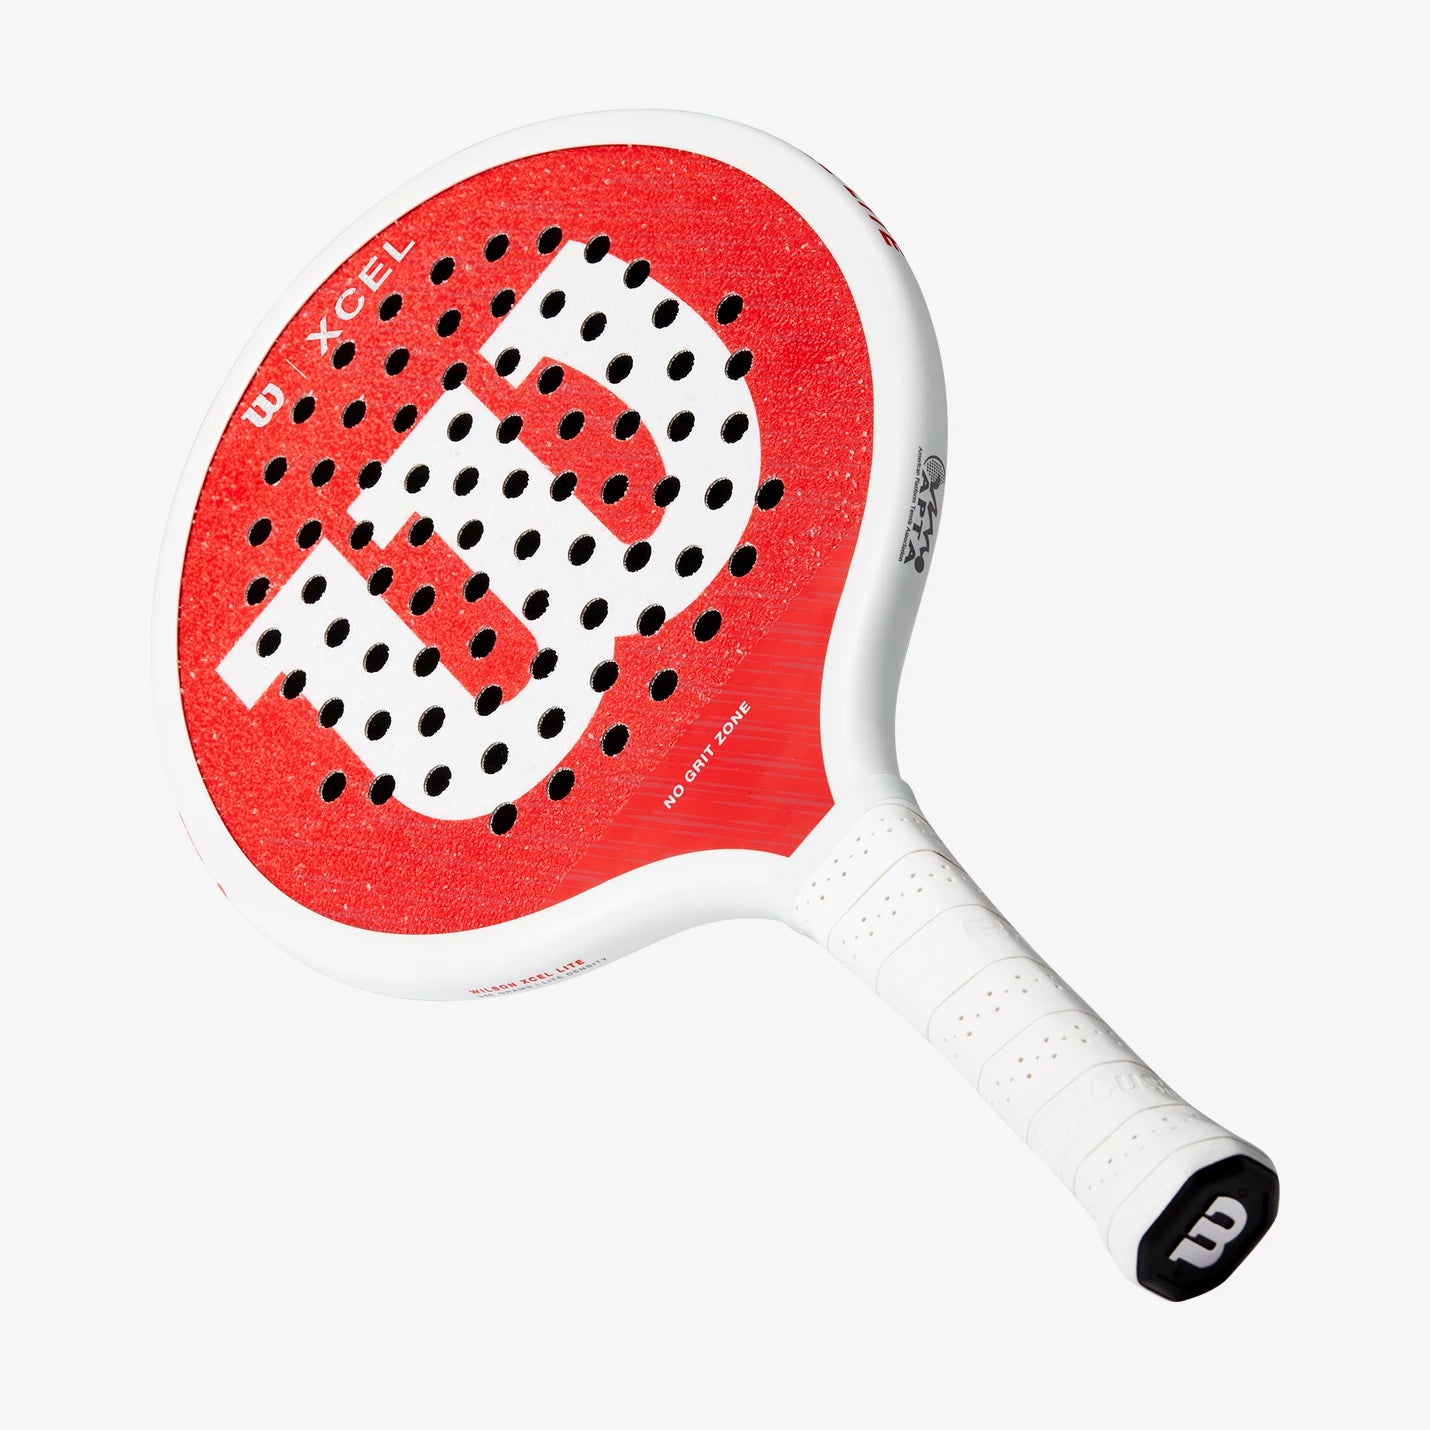 Xcel LITE V3 Platform Tennis Paddle